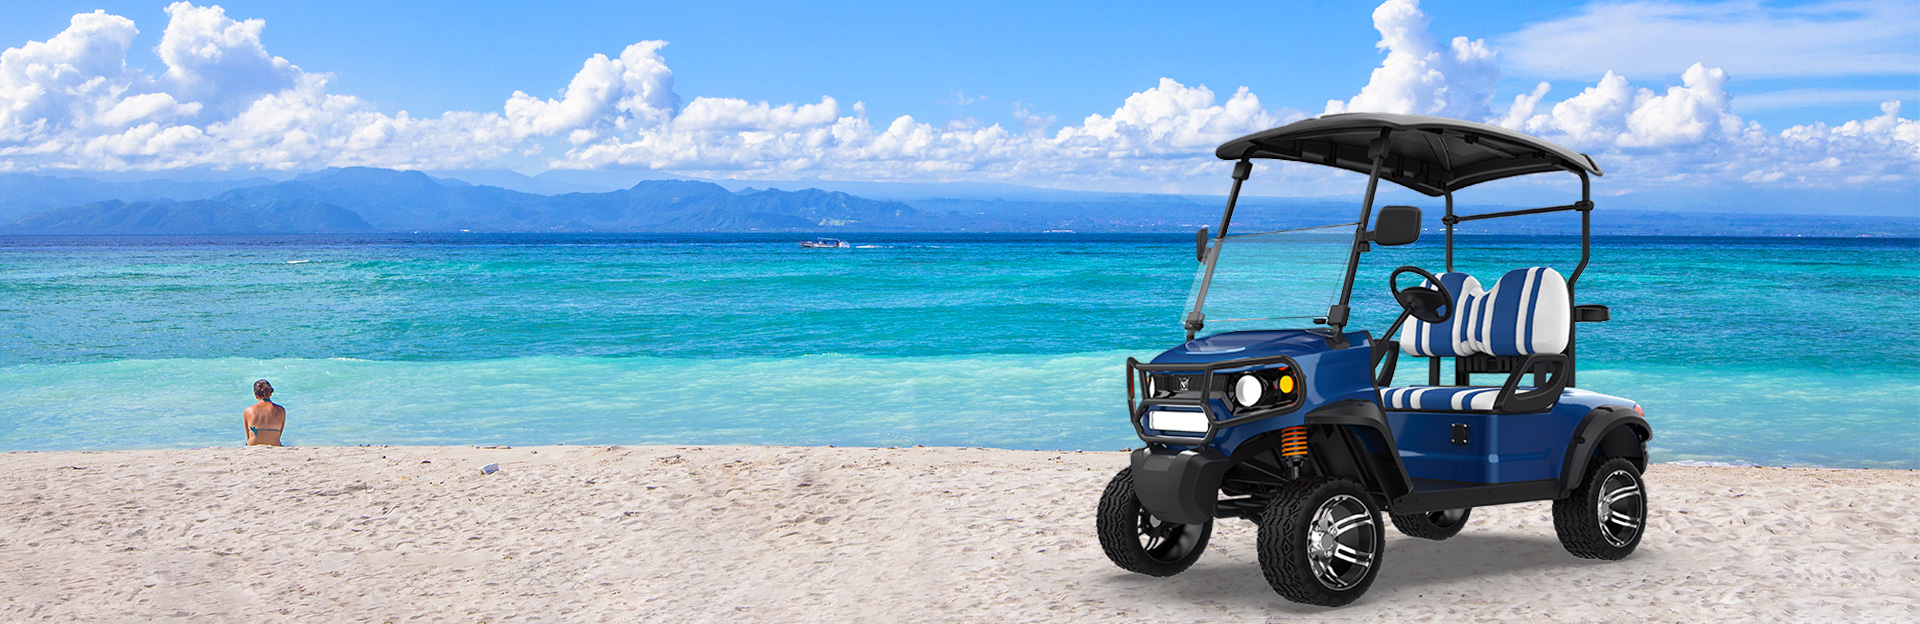 Pioneiro em estilo: carrinhos de golfe off-road levantados para entusiastas extremos ao ar livre